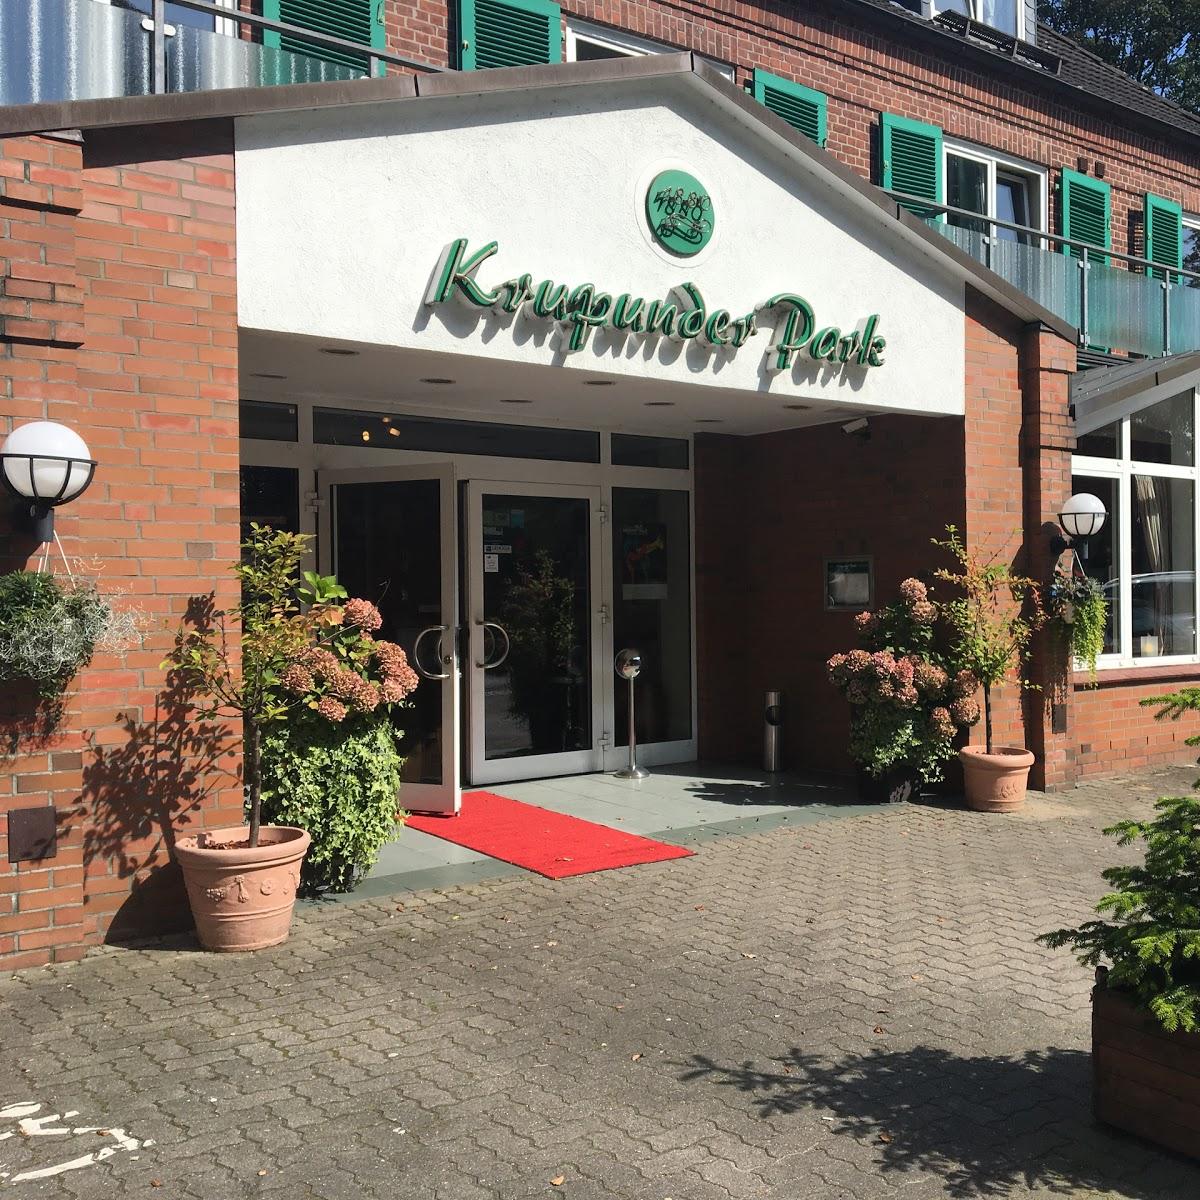 Restaurant "Hotel Krupunder Park" in  Rellingen